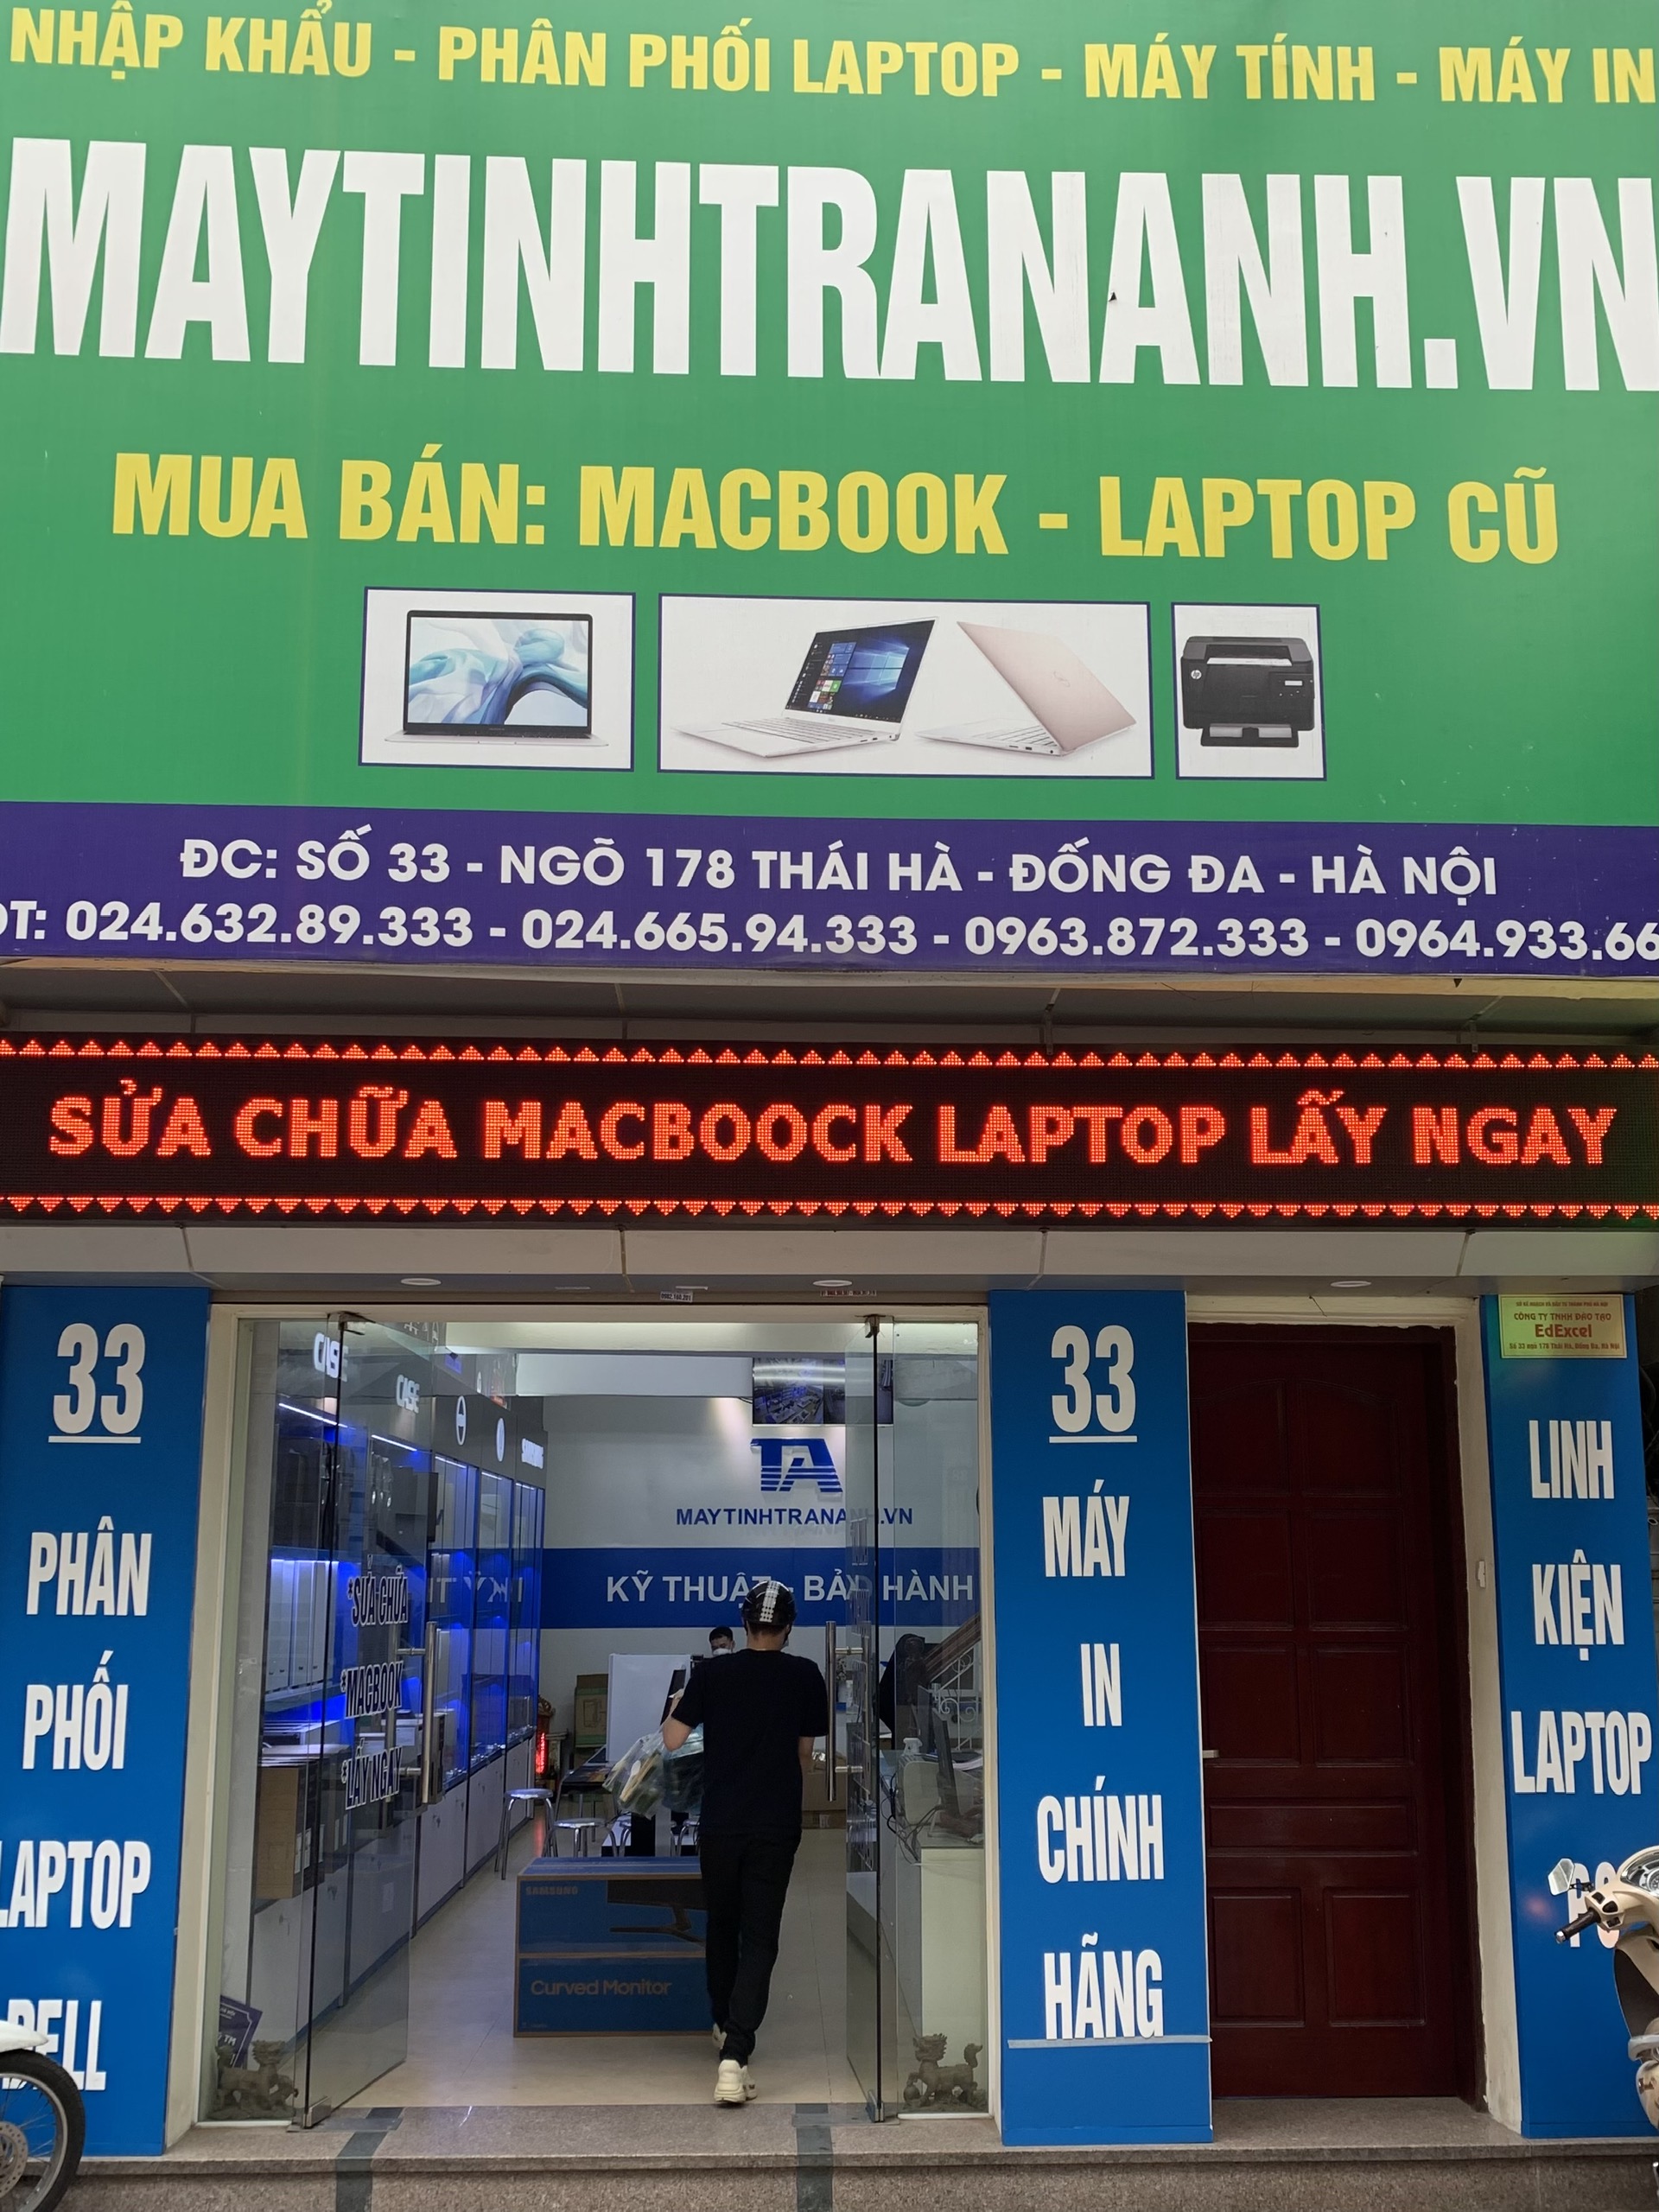 Đơn vị sửa chữa laptop chuyên nghiệp, giá rẻ ở Hà Nội